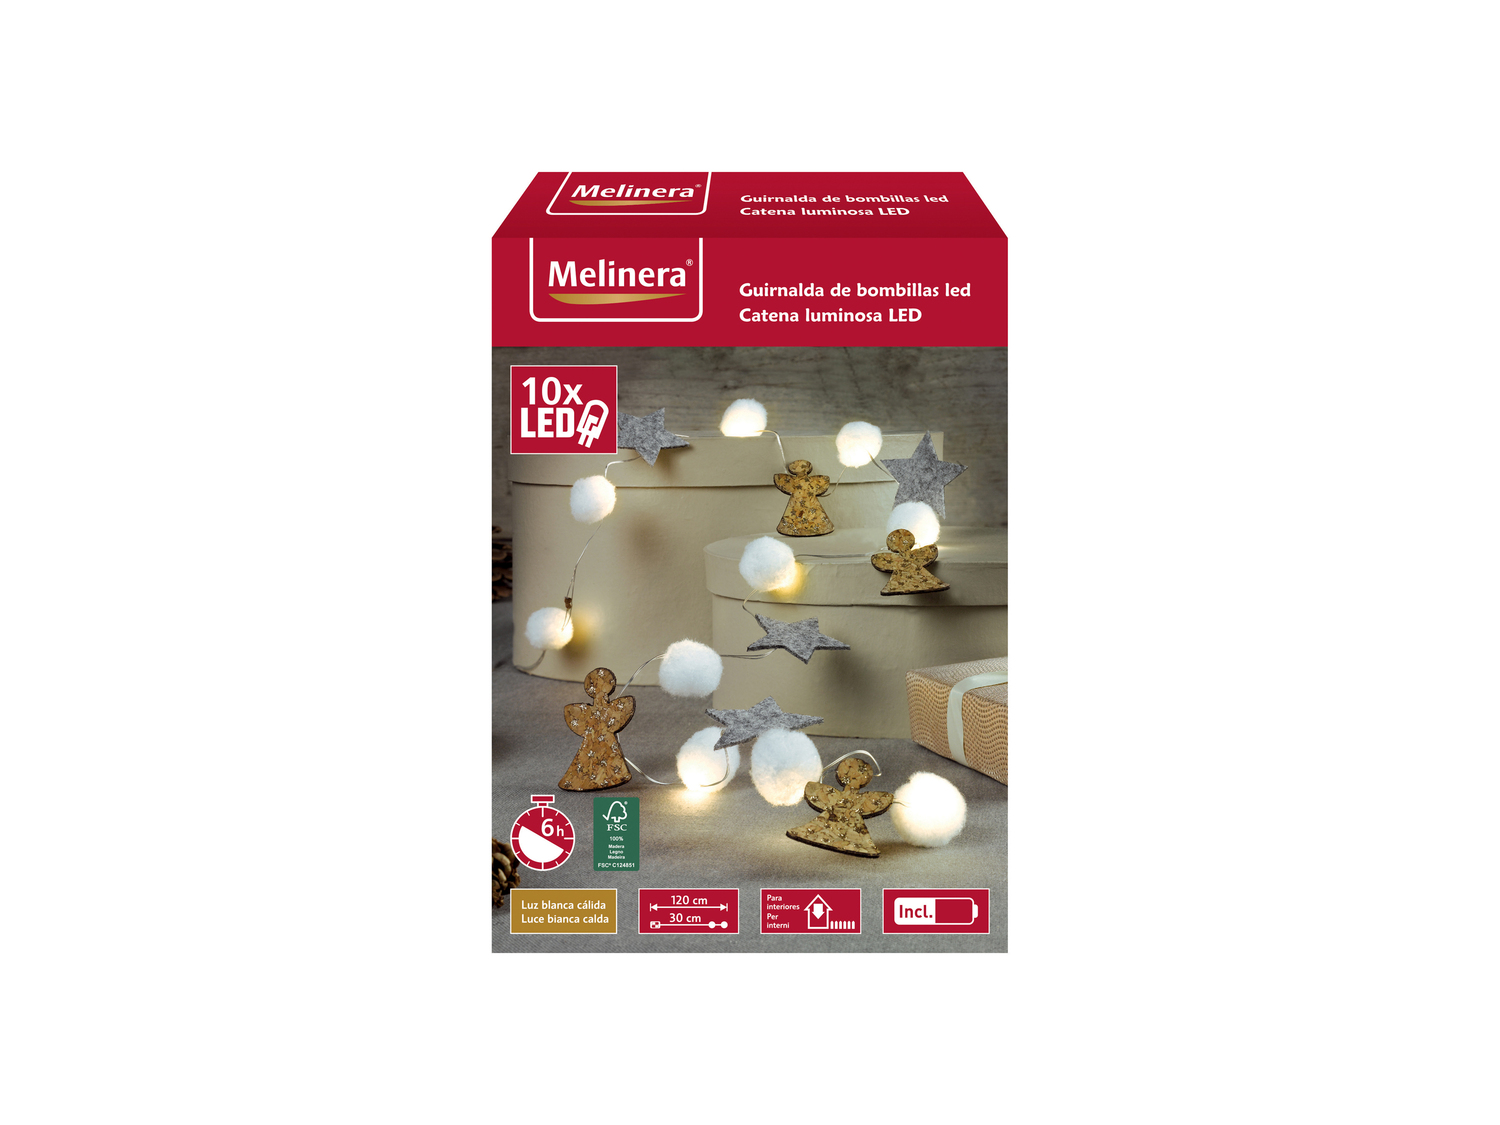 Catena LED decorativa Melinera, prezzo 3.99 &#8364; 
- Per interni
- 10 LED ...